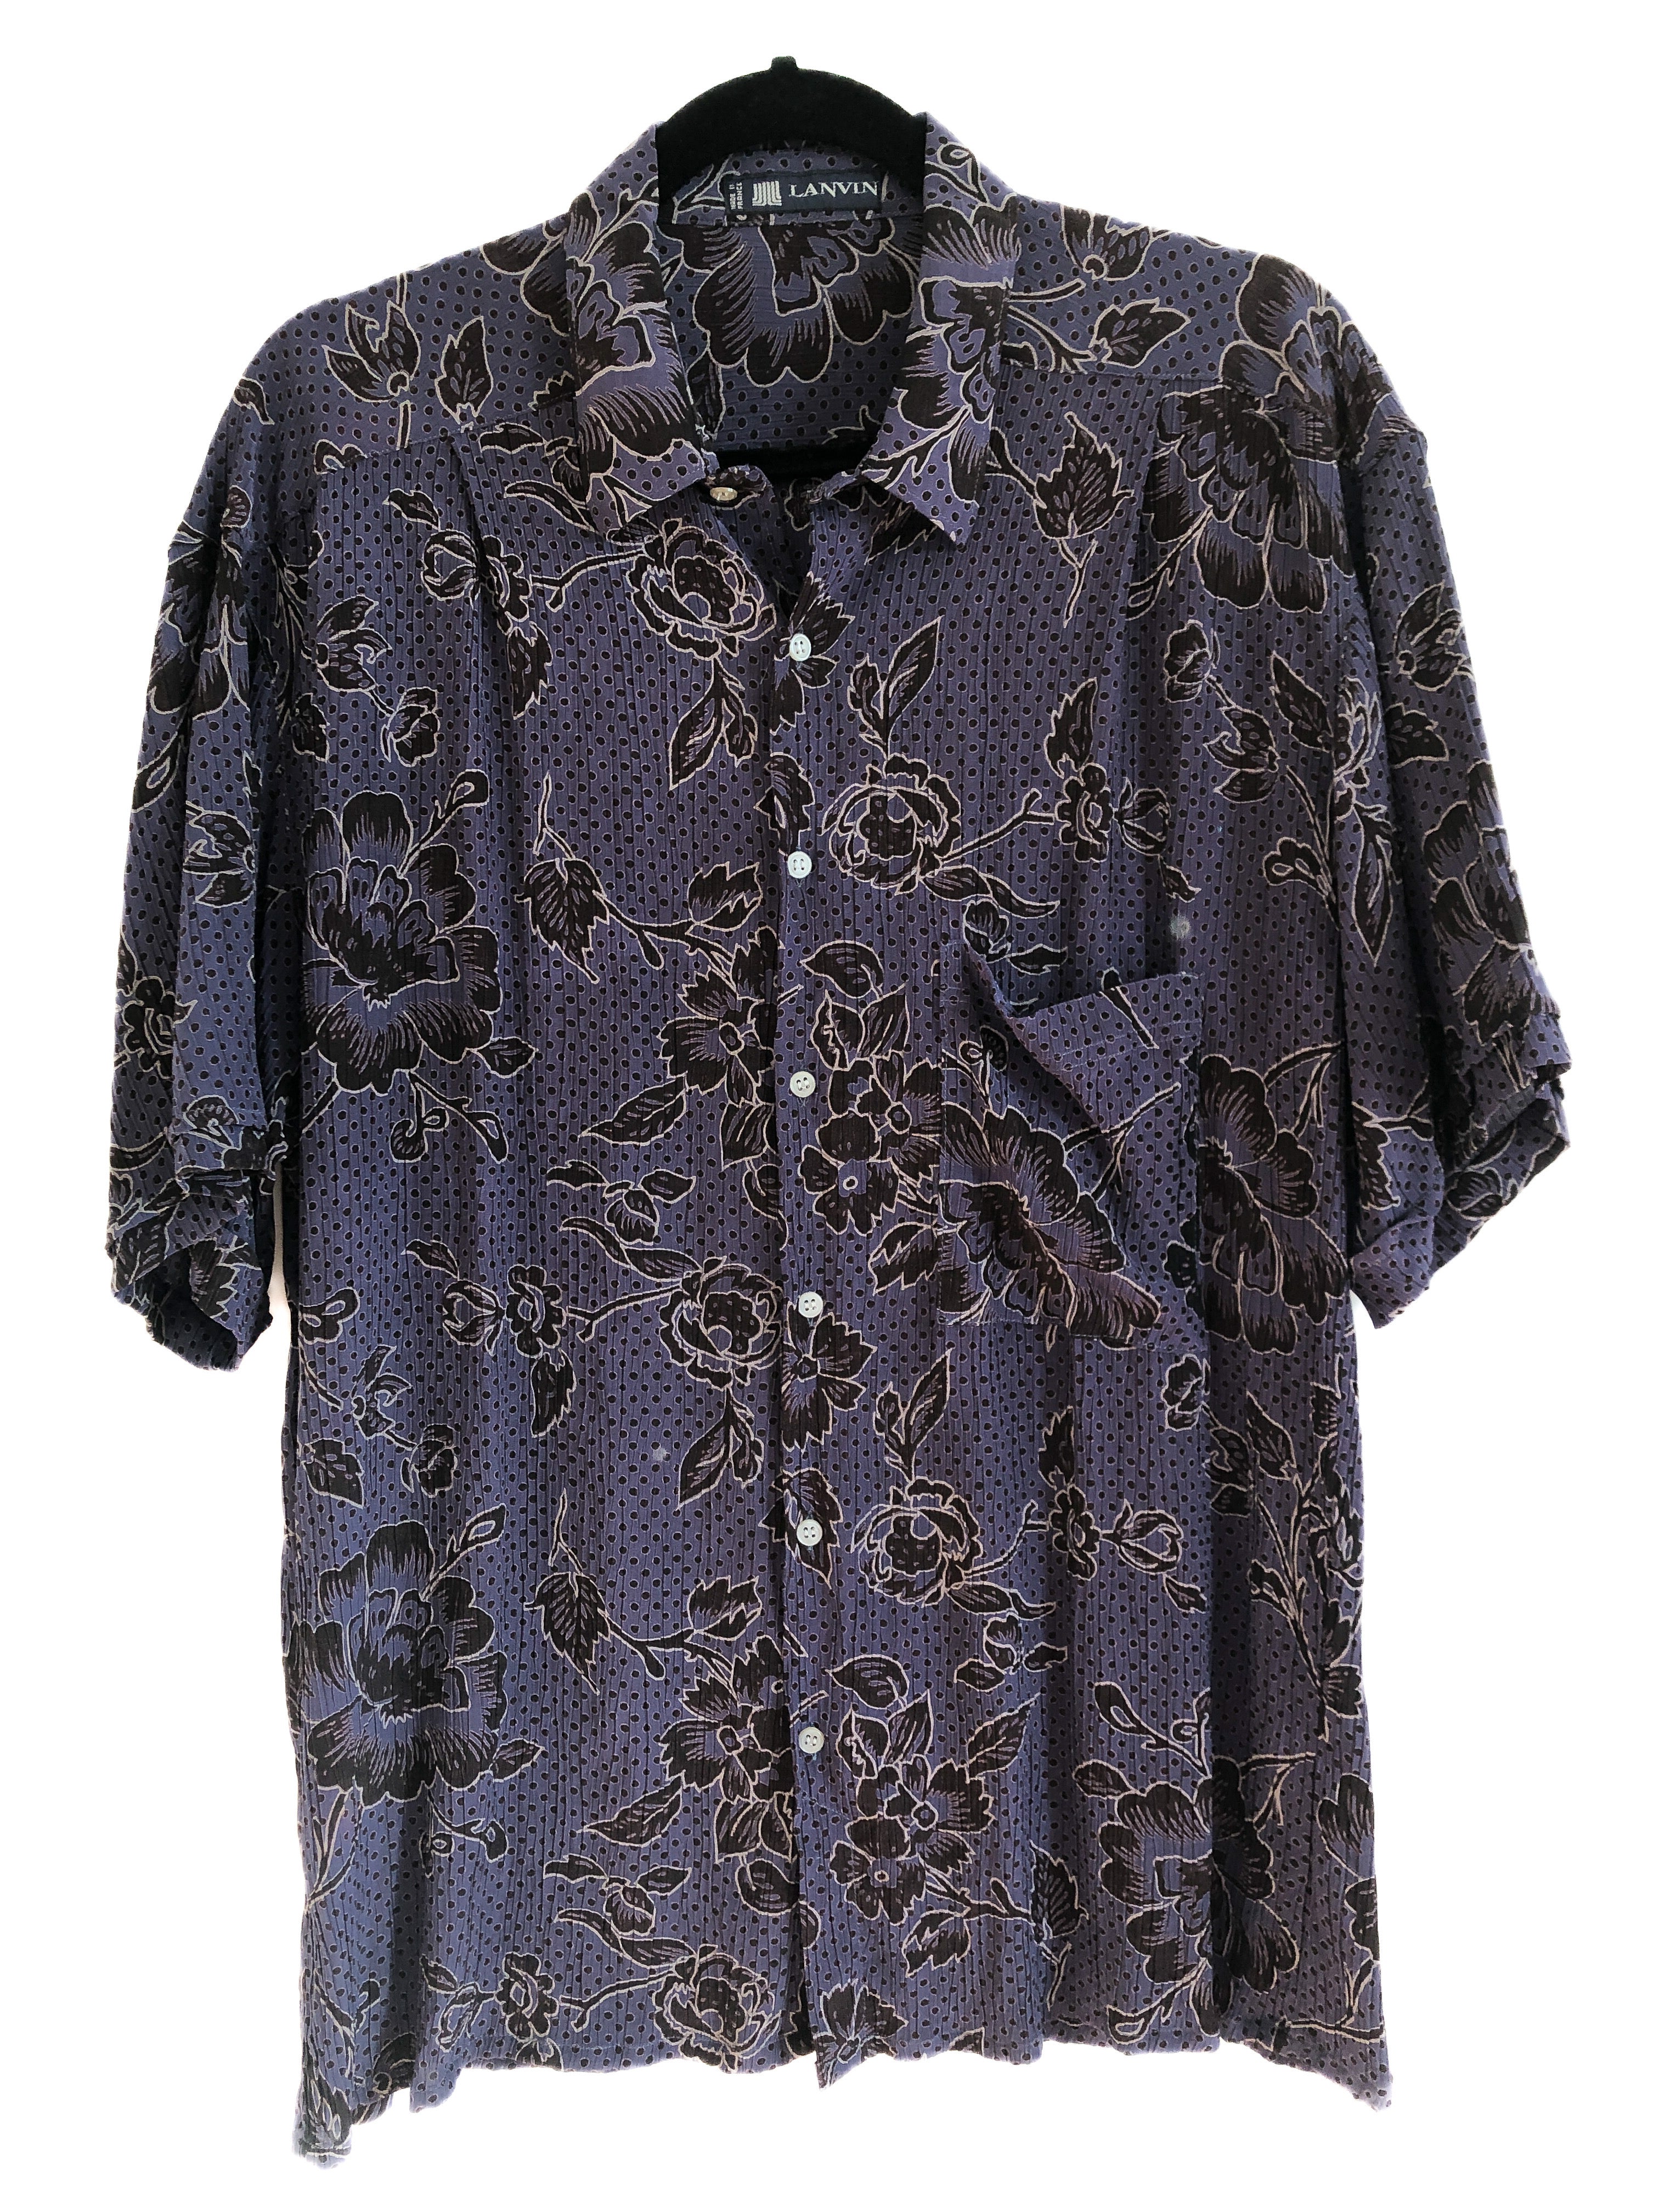 Vintage Purple Floral Unisex Oxford, Button Up 1980s Plisse Pleats, 80s Faux Designer Lanvin